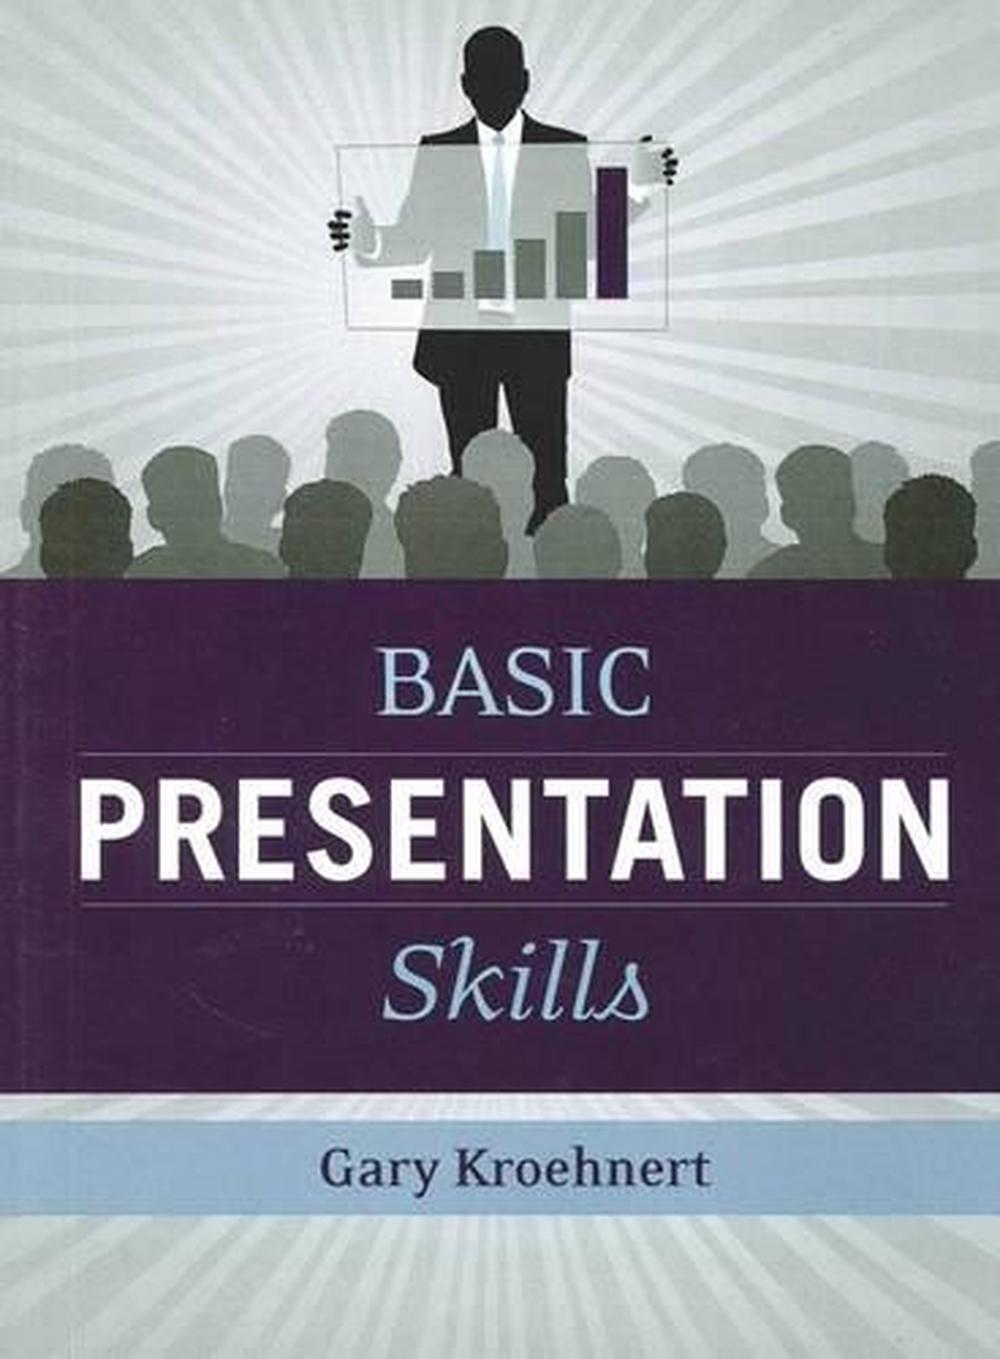 books on academic presentation skills